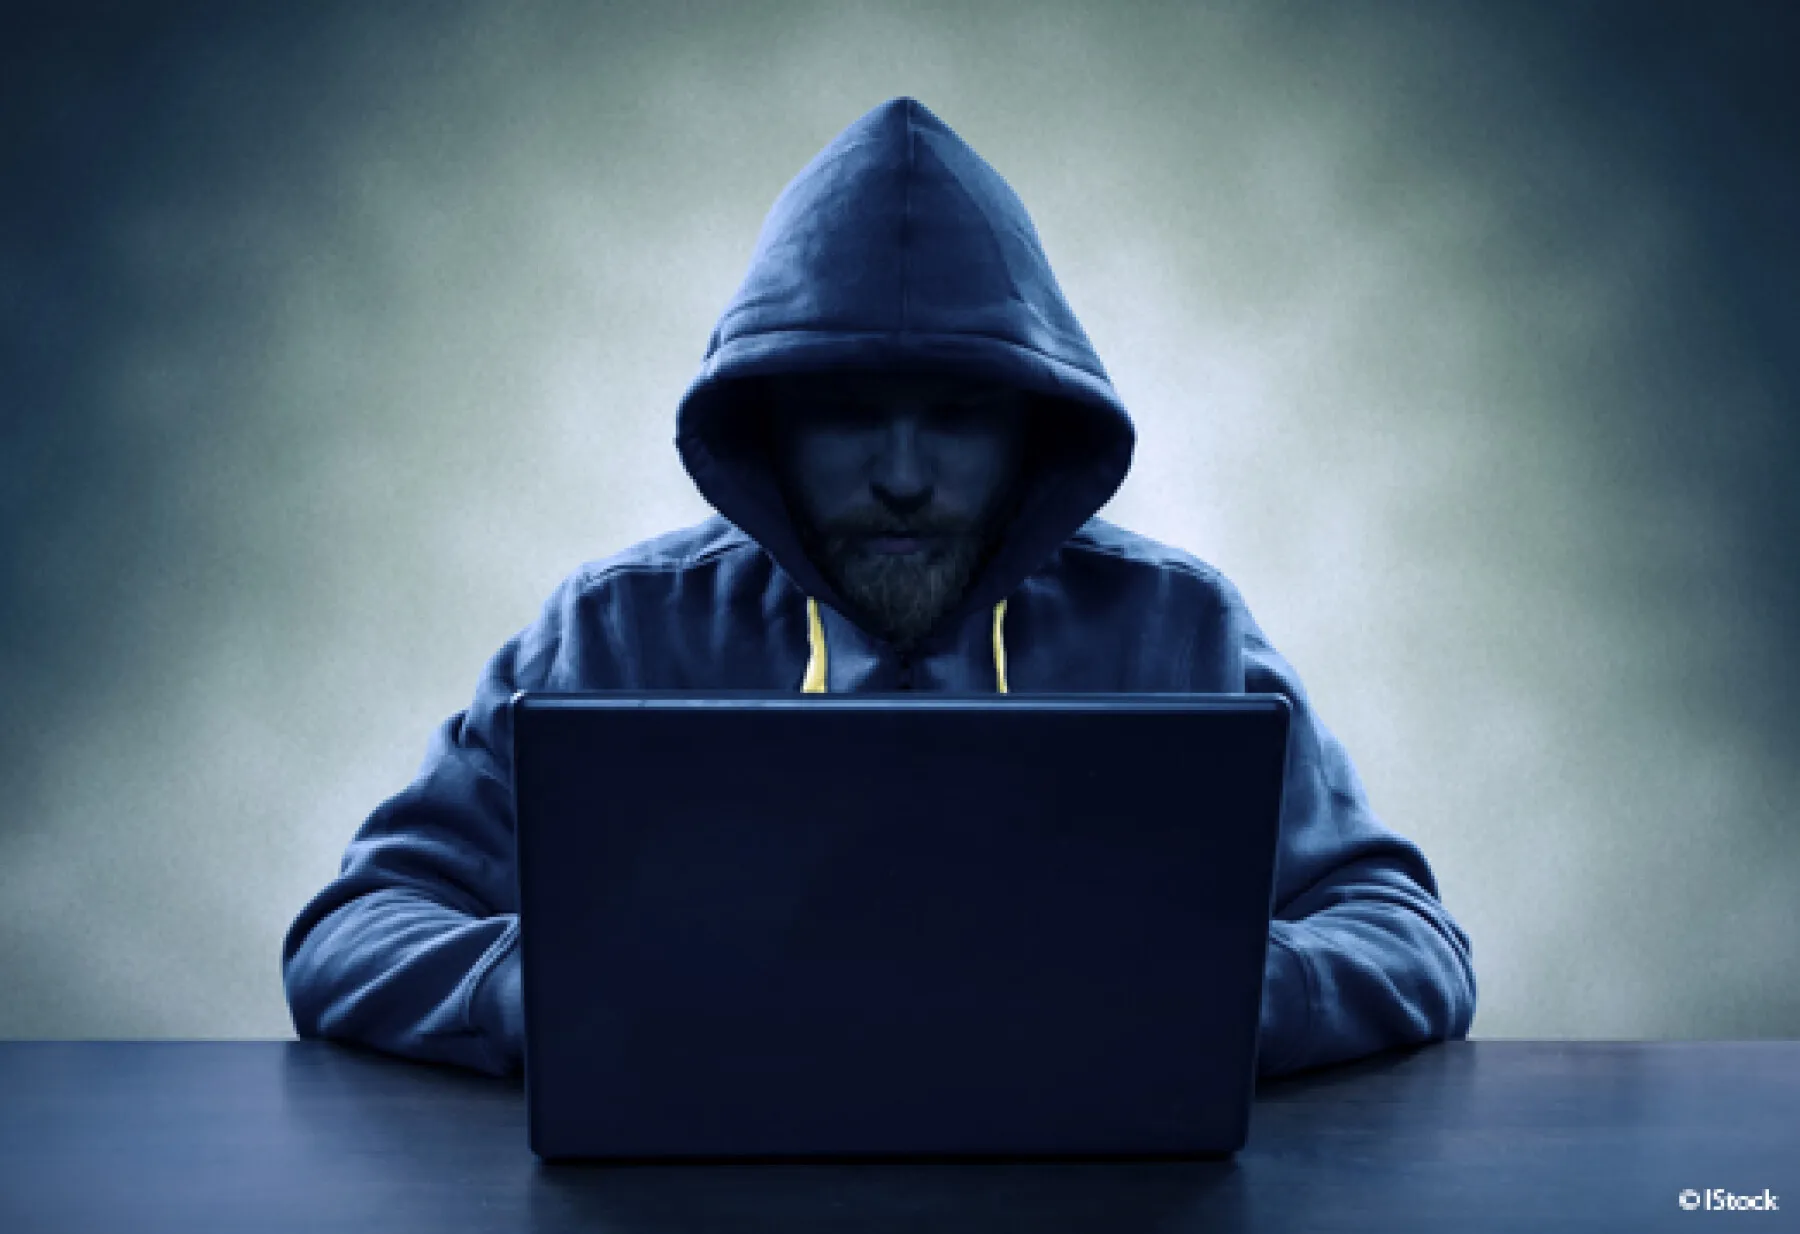 un homme assis à un bureau devant un ordinateur. Son visage est à peine visible sous la capuche d'une veste de couleur gris foncé, et il est dans la pénombre. La photo est grise et sombre.